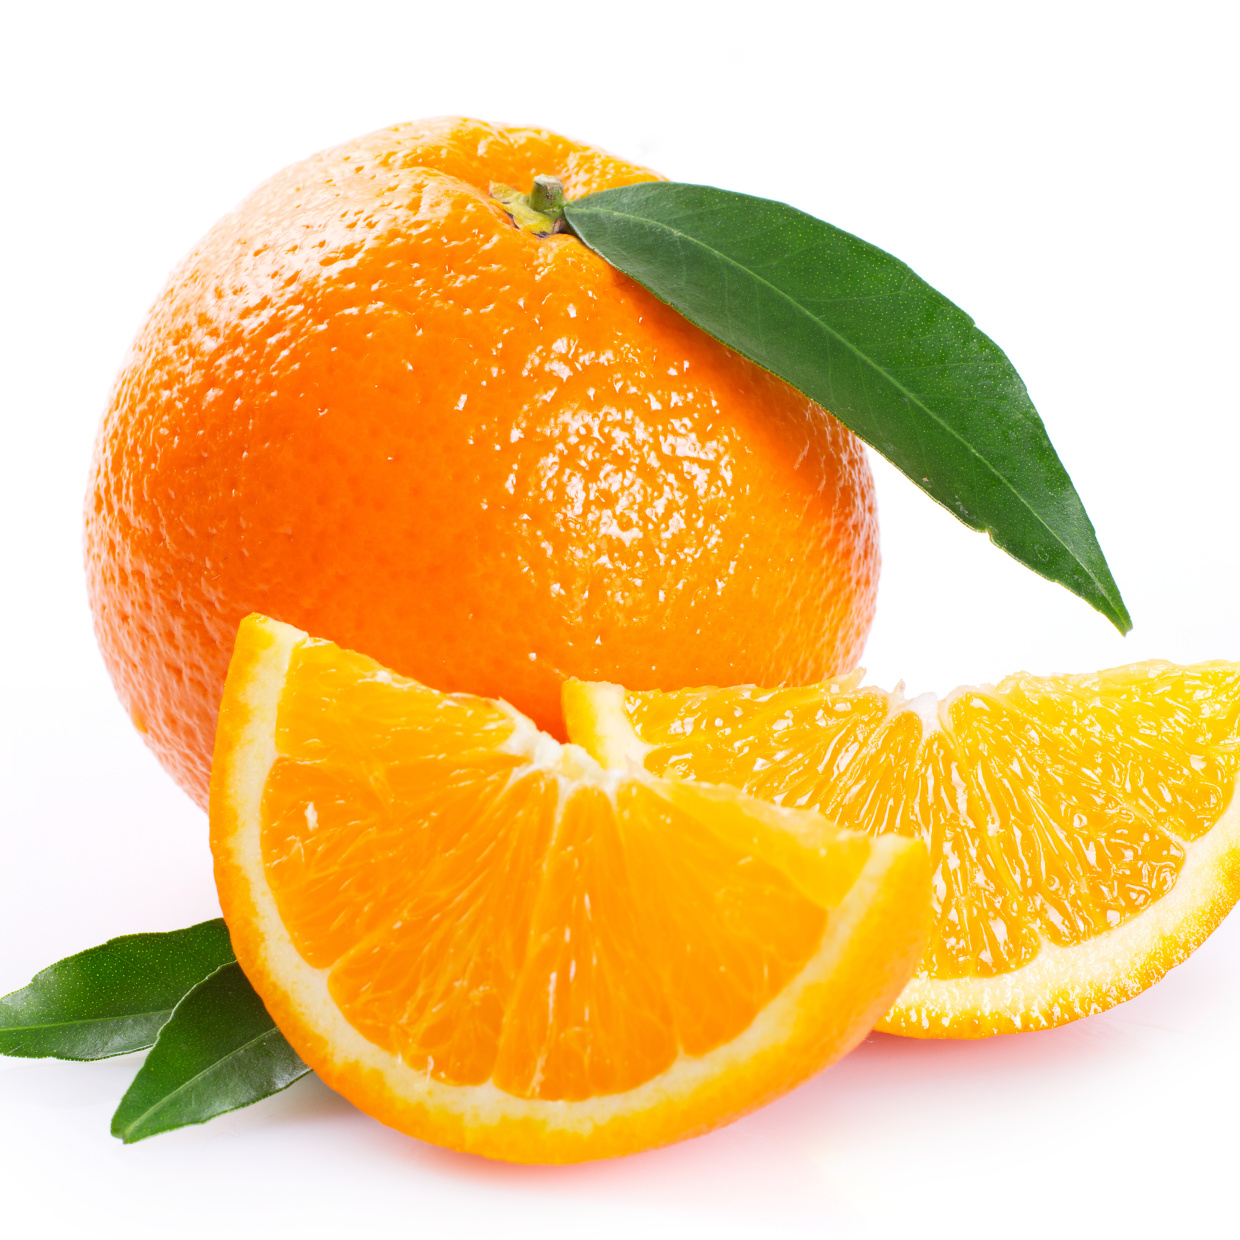  「オレンジ」をガバッと気持ちよく剥いて食べる方法 